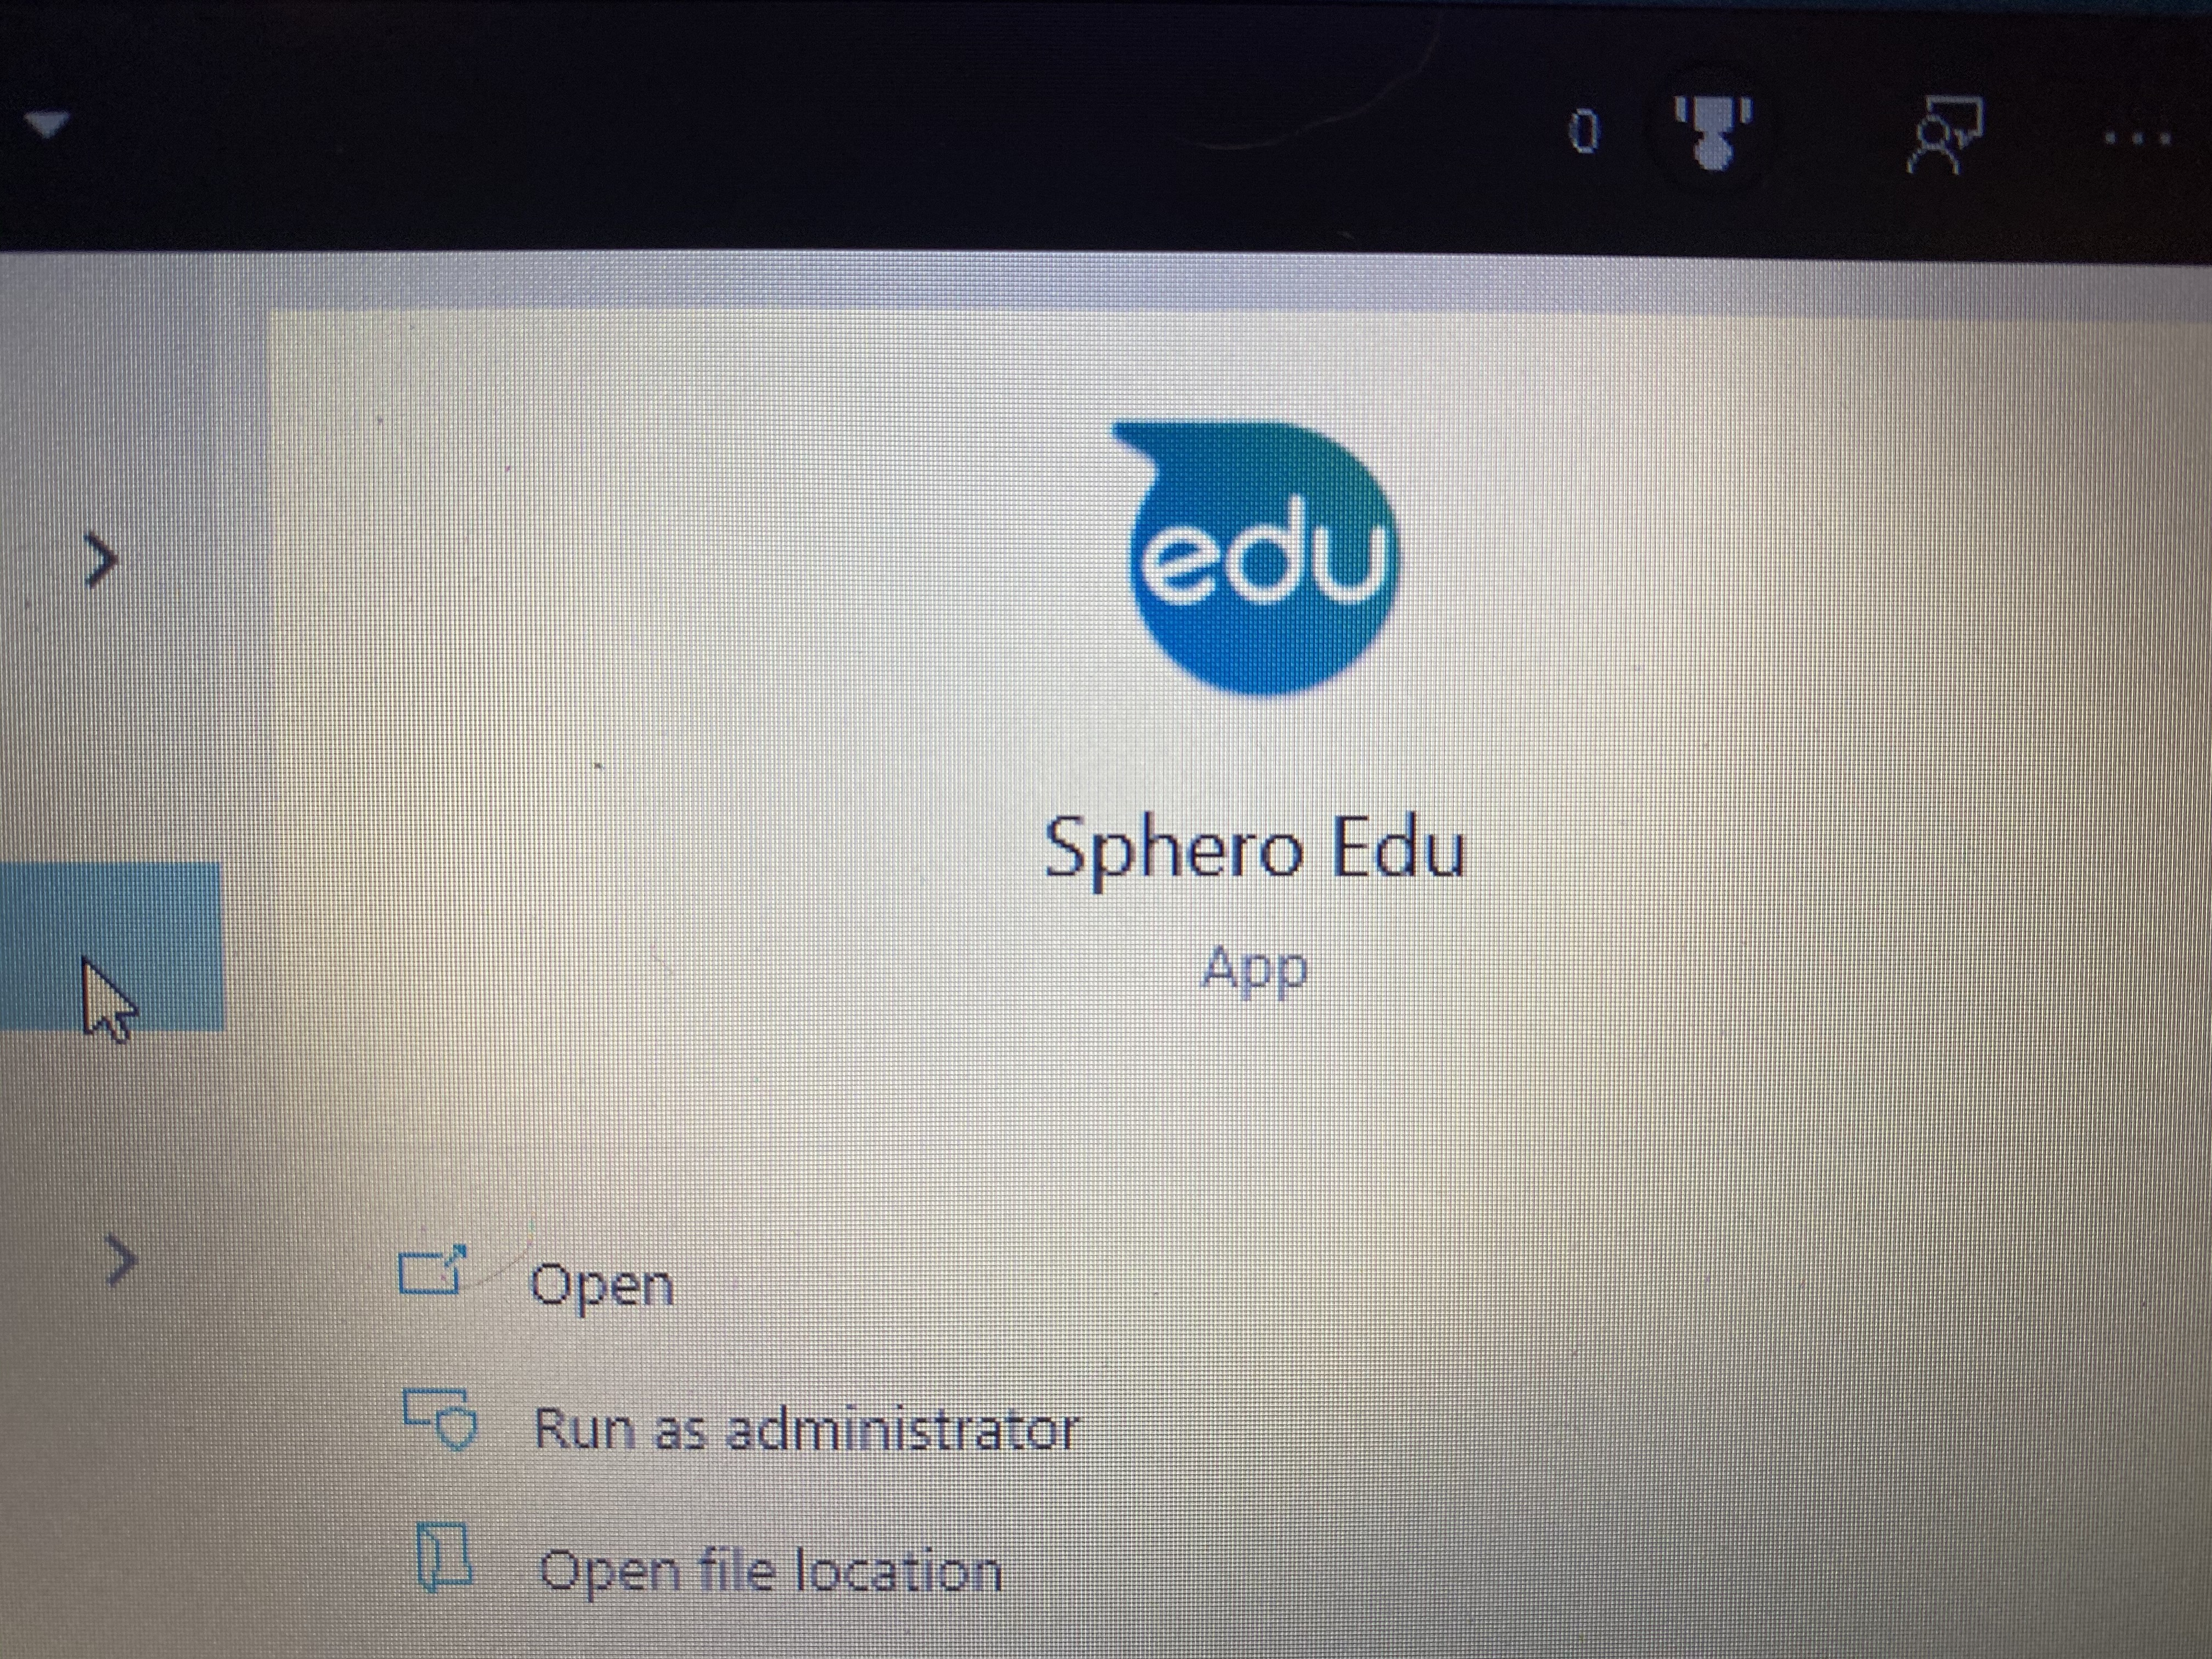 beta sphero edu app for mac